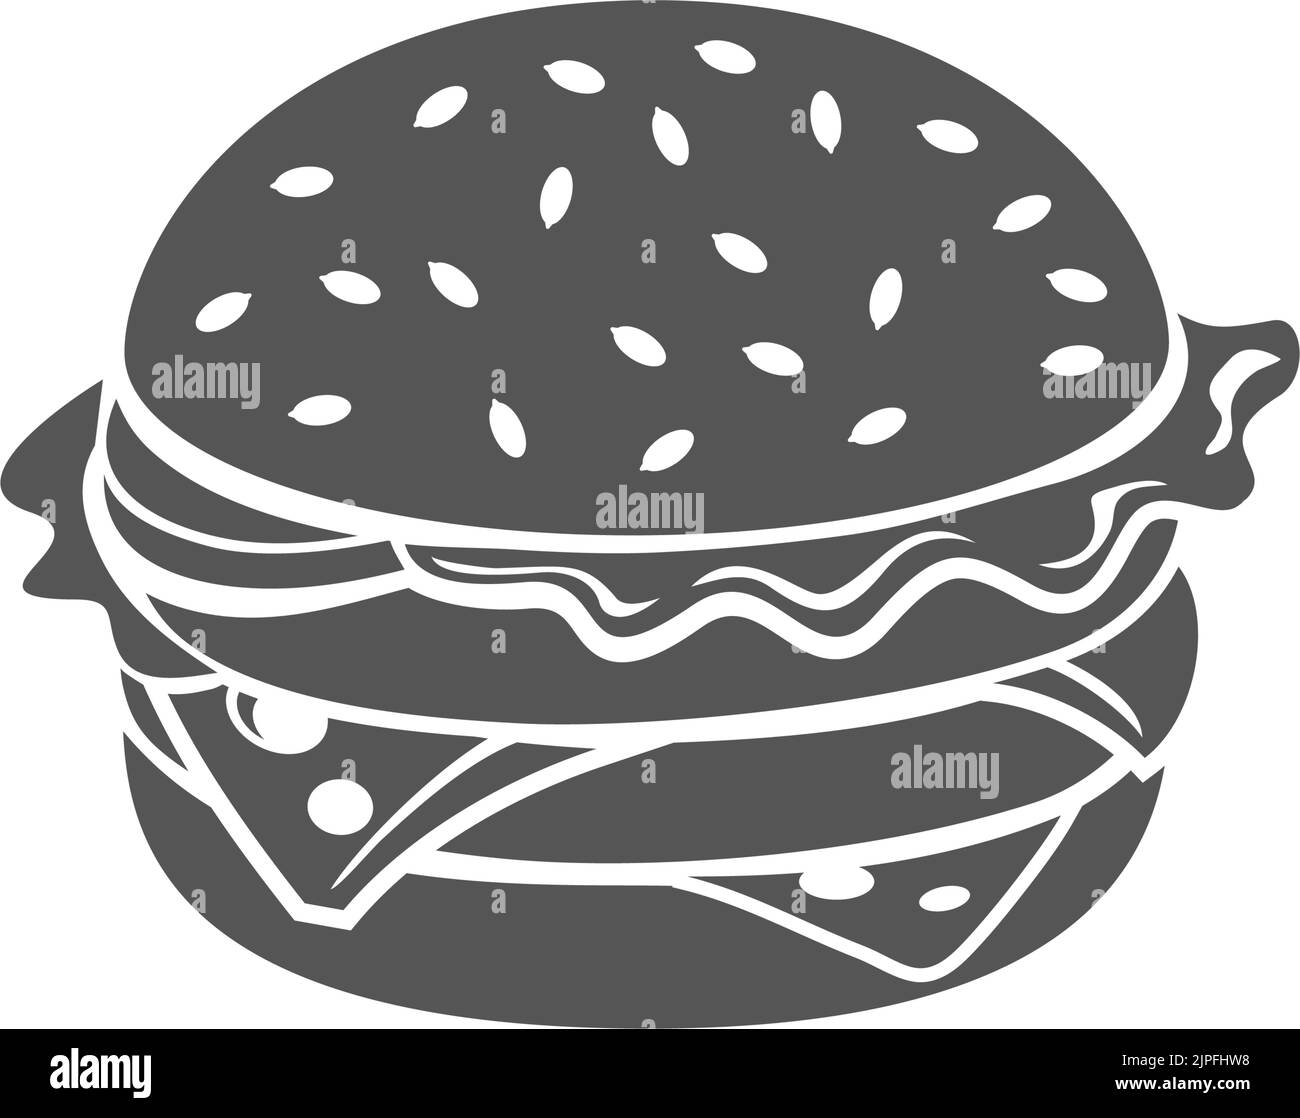 Cheeseburger Fastfood Snack isolierter Hamburger monochrome Ikone in Schwarz und Weiß. Vector Burger mit Sesambrötchen, Käse und Rindfleisch, Salatblättern. Fastfood Imbiss zum Mitnehmen, Street Food Stock Vektor